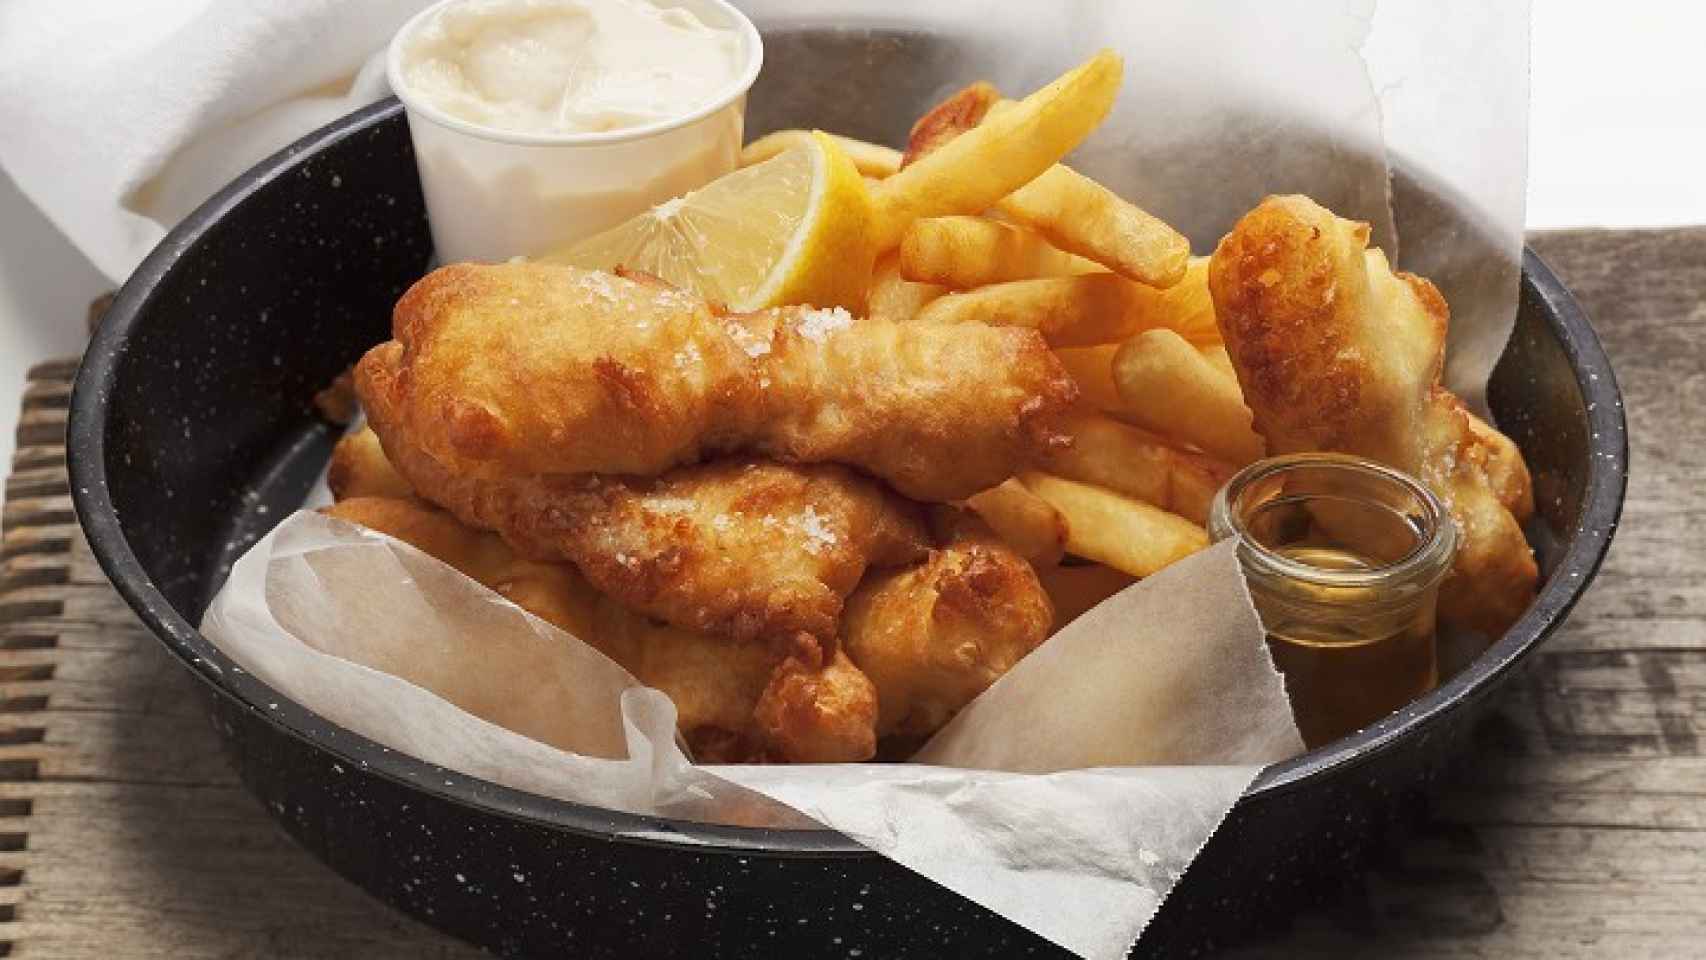 'Fish and chips', la comida británica por excelencia.